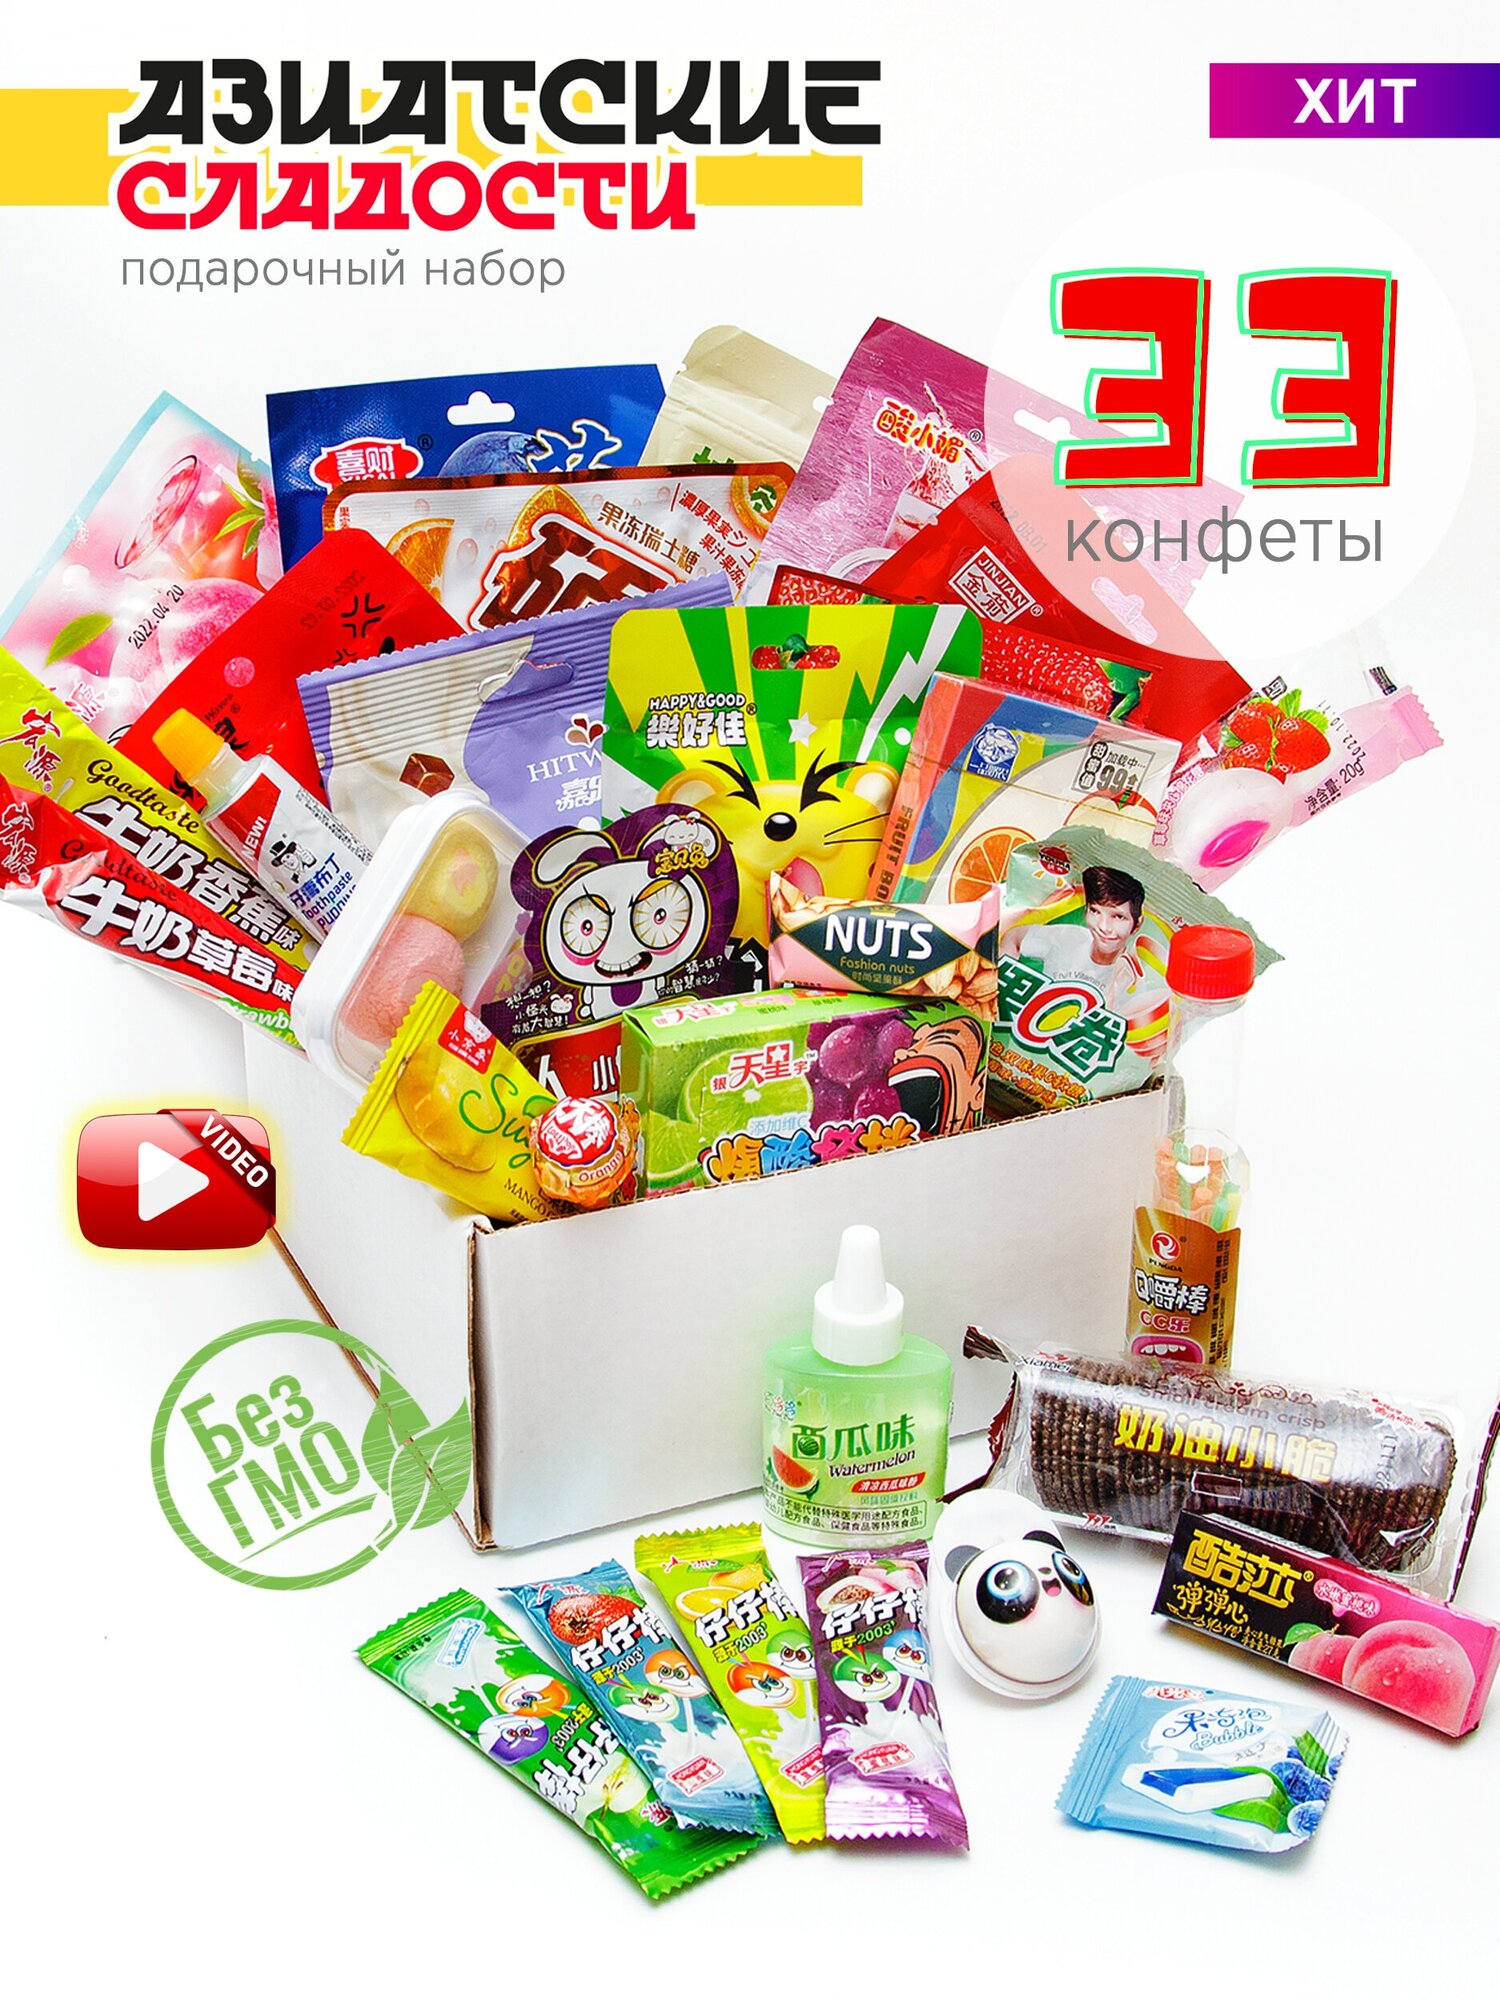 Подарочный набор из 33-х Азиатских сладостей Яркий/Вкусный/Сюрприз подарок на день рождения